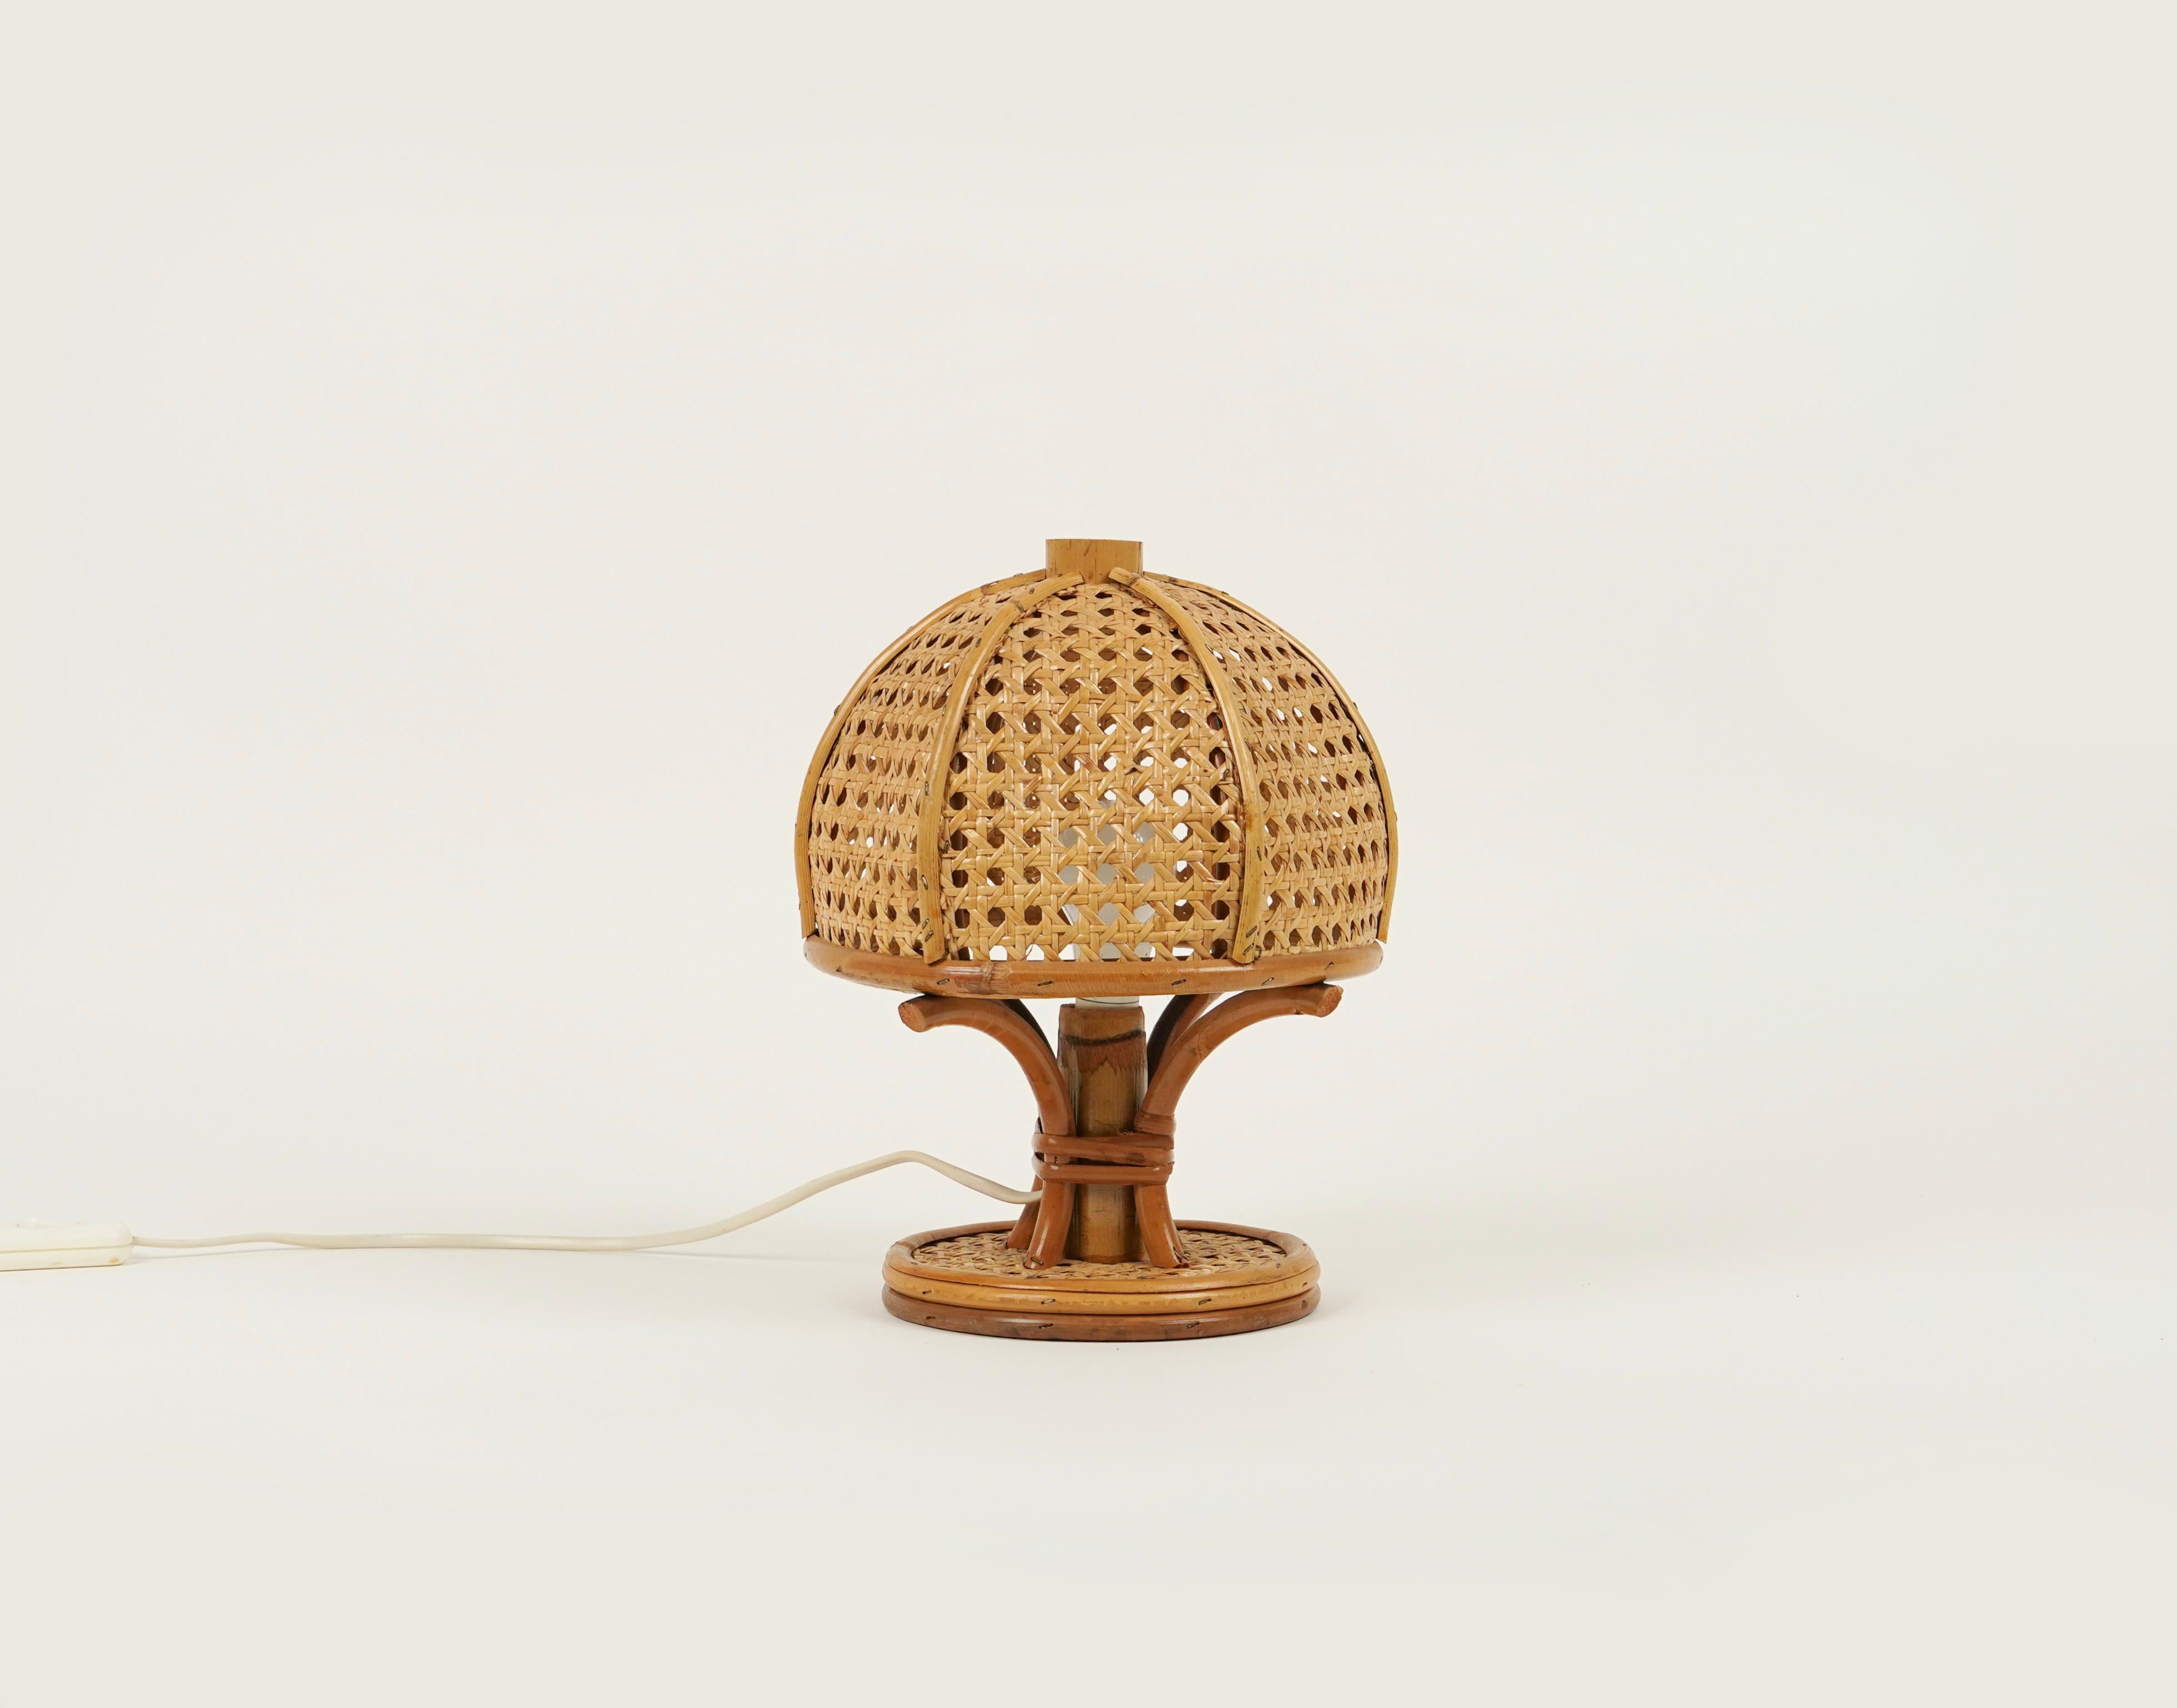 Belle lampe de table en bambou et rotin dans le style de Louis Sognot.

Fabriqué en Italie dans les années 1970.

Louis Sognot était un designer français connu pour ses meubles élégants fabriqués à partir d'une combinaison de rotin et de bois.